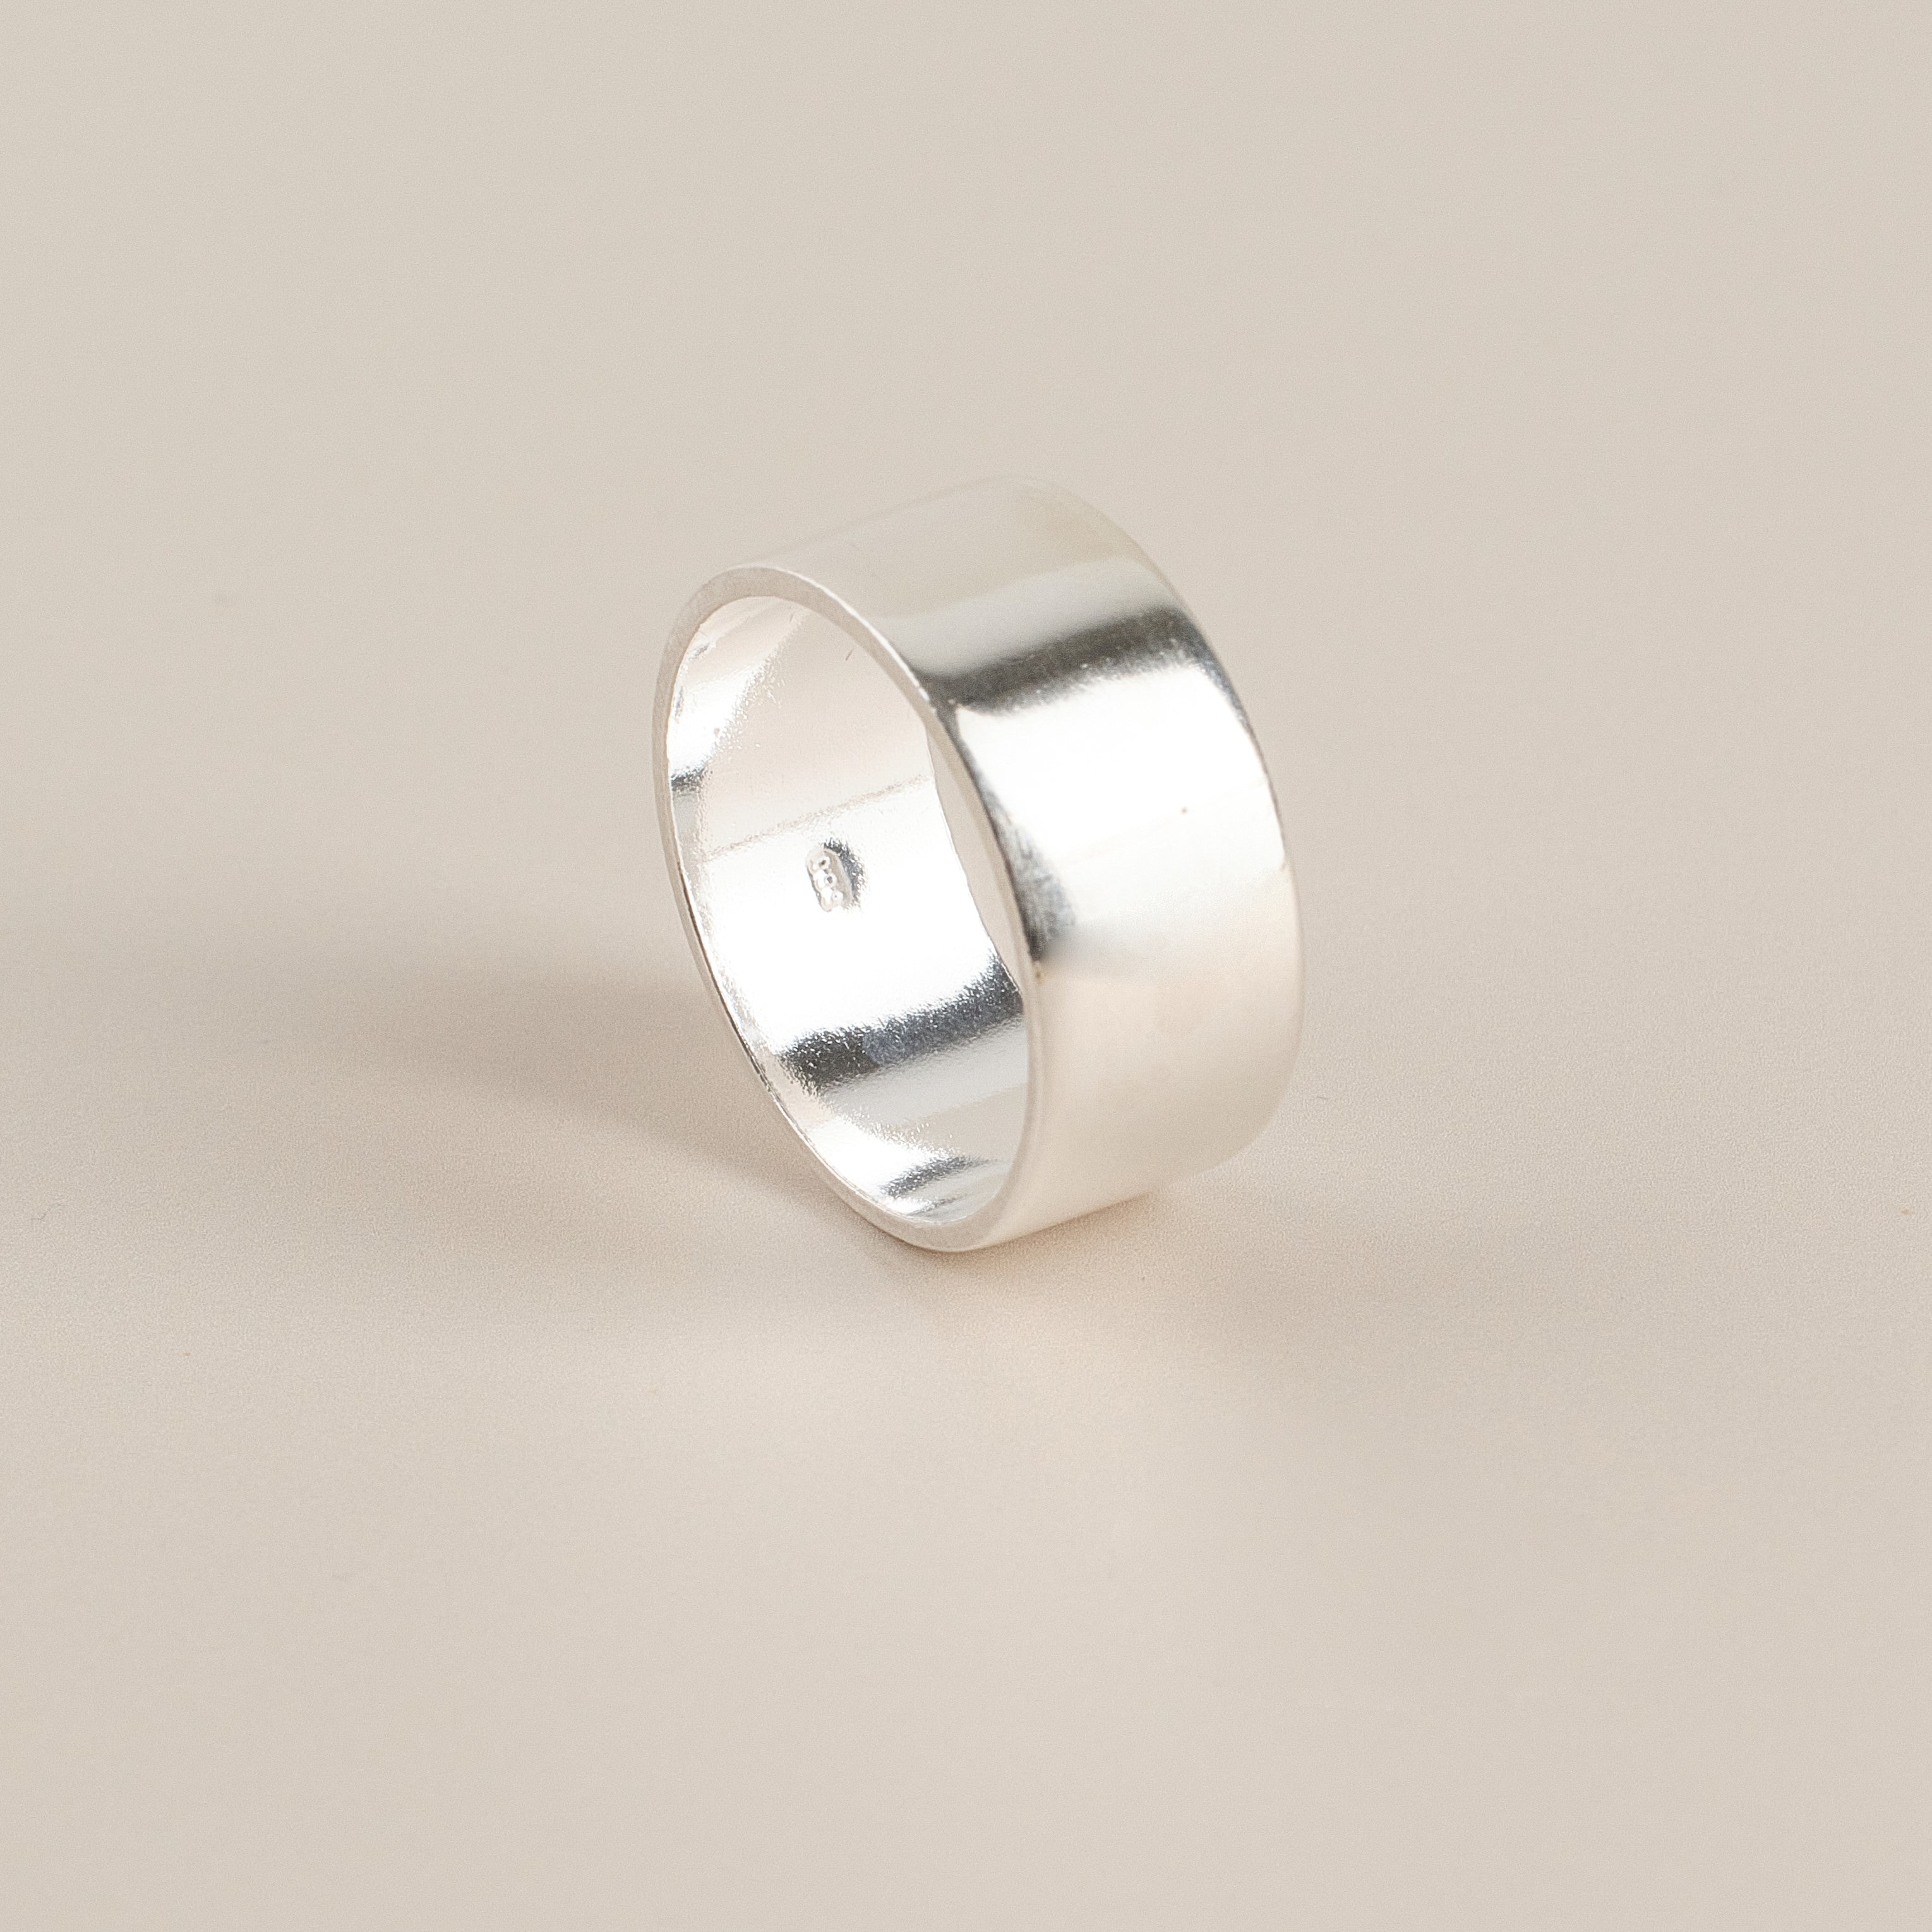 Plain Ring 0.8cm S999